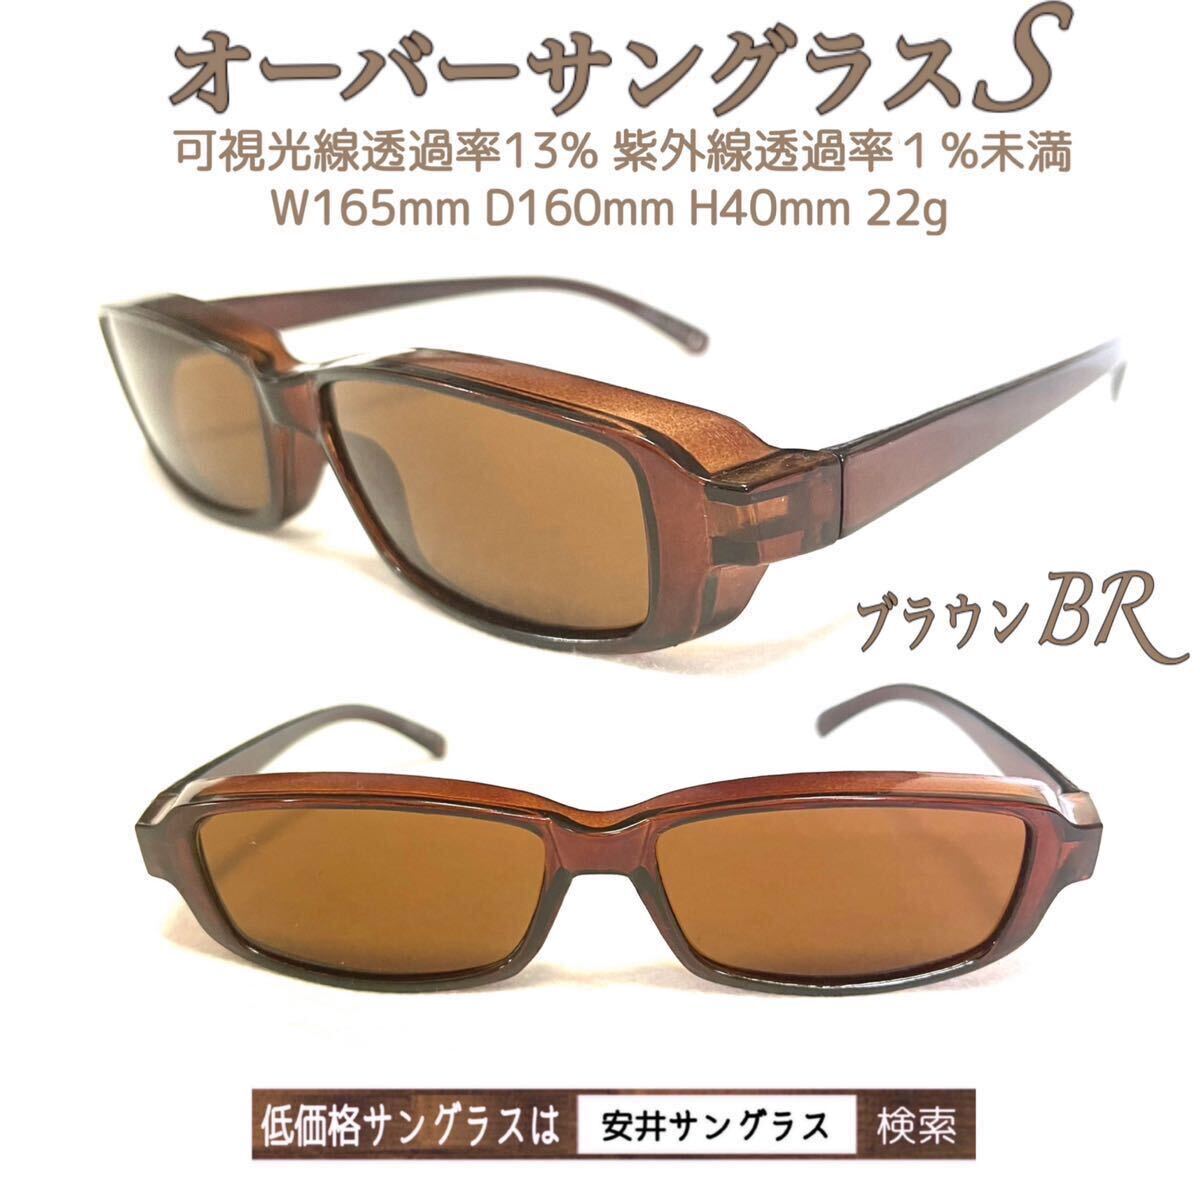  over солнцезащитные очки S черный BK BIG солнцезащитные очки немедленная отправка дешево . солнцезащитные очки защитные очки ru